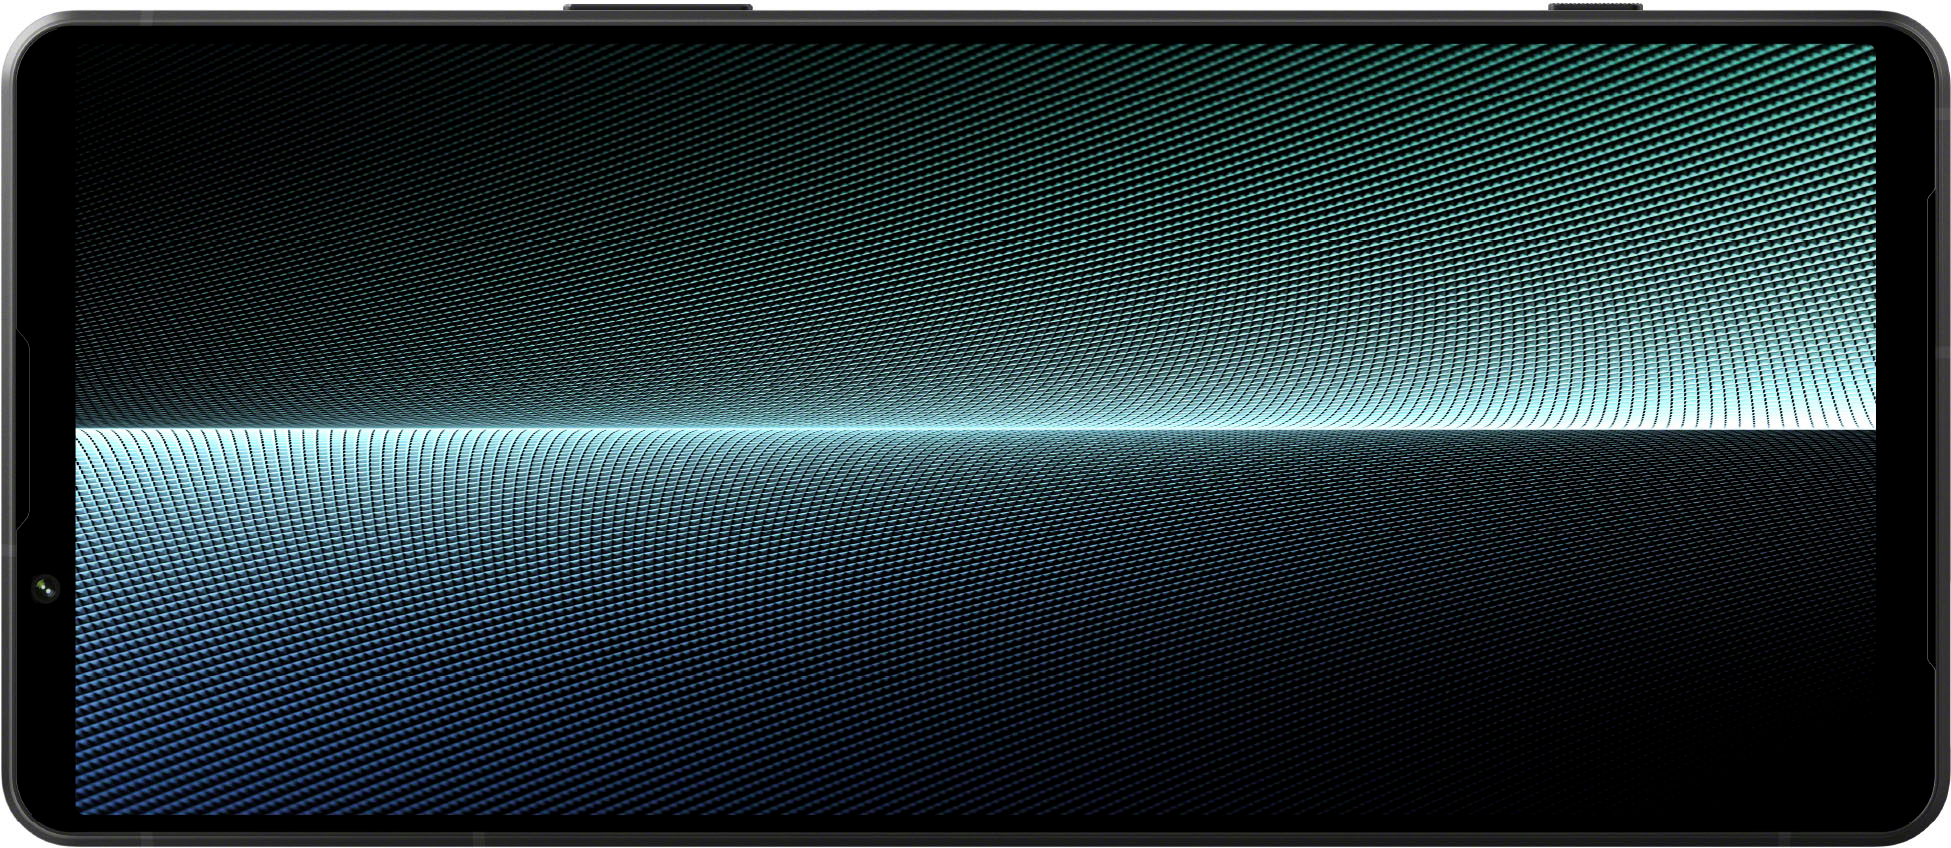 Sony Xperia 1 V 256GB 5G (Unlocked) Black XQDQ62/B - Best Buy